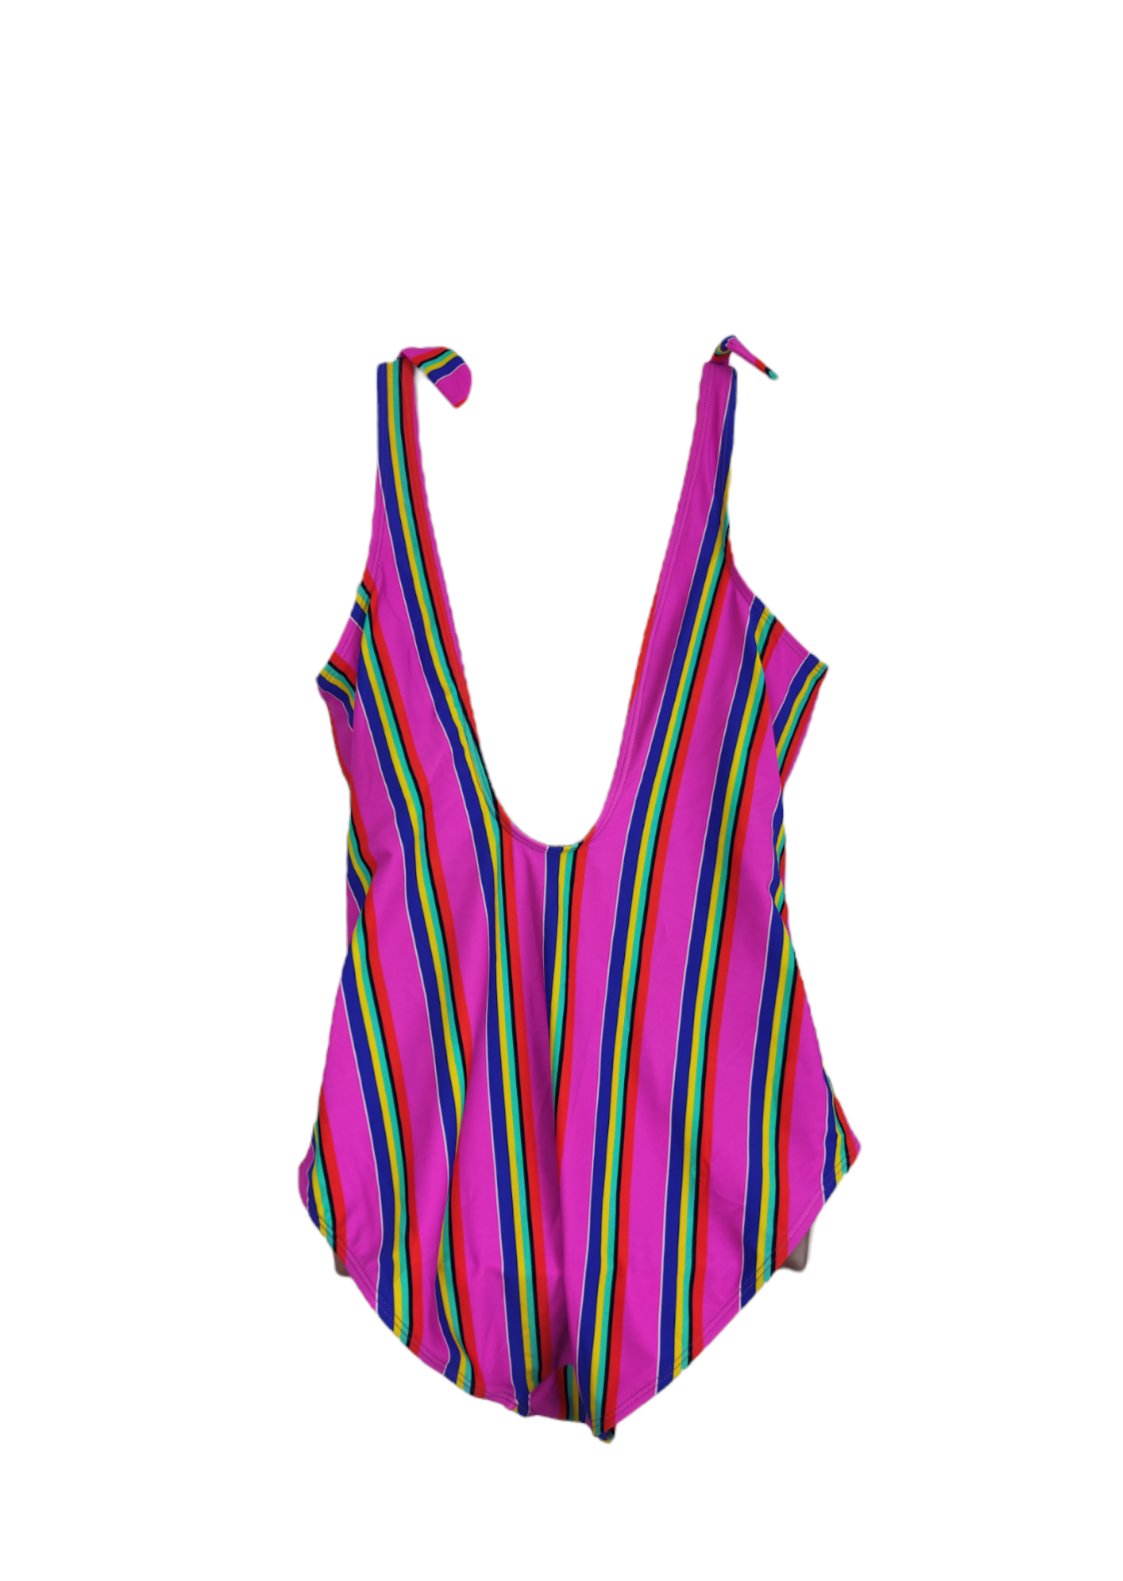 Ριγέ Γυναικείο Ολόσωμο Μαγιό με Φλούο χρώματα (XL/2XL)